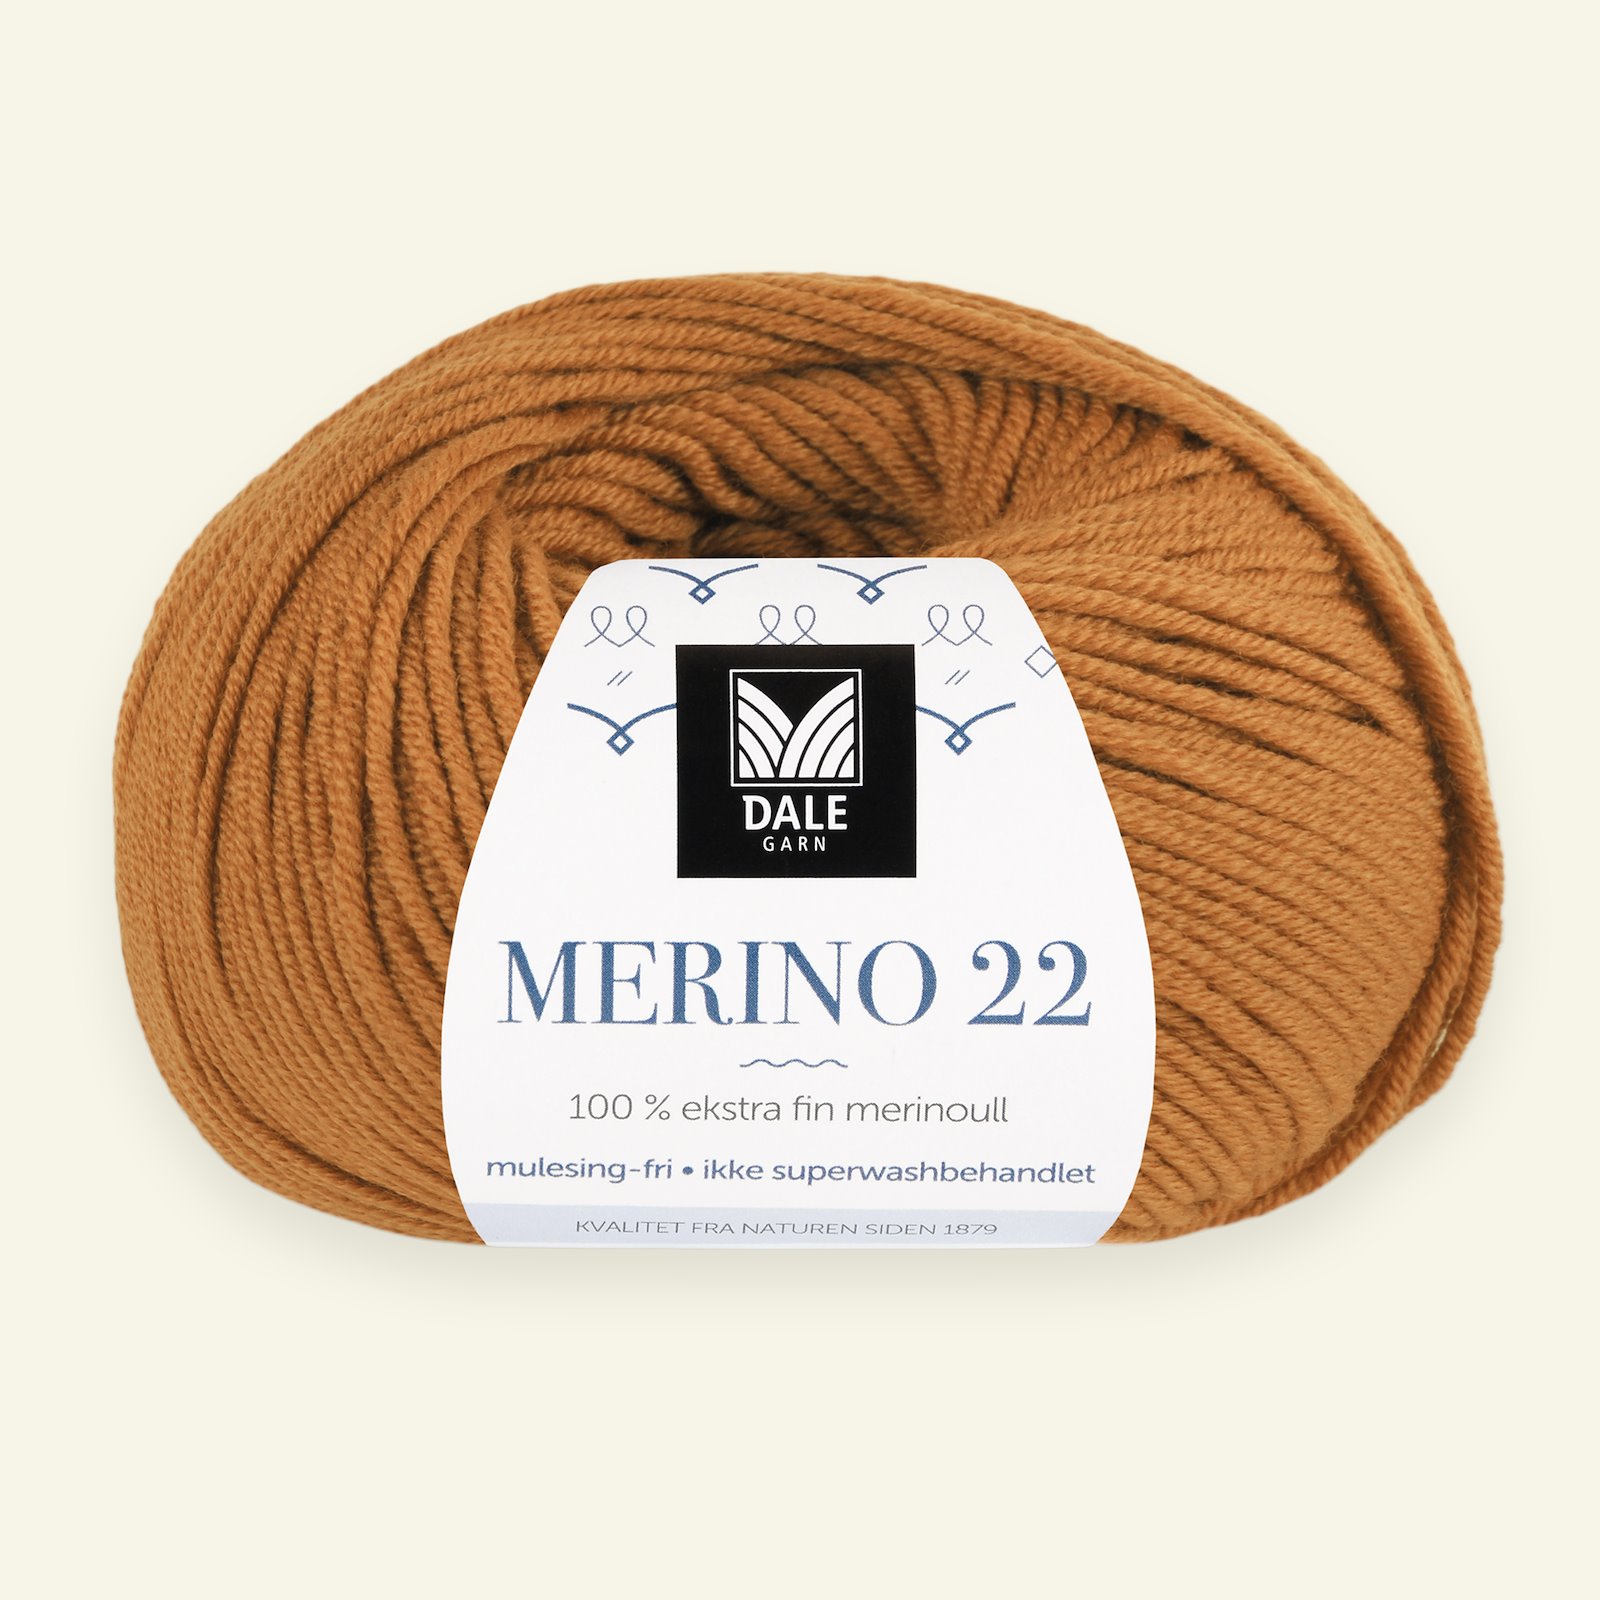 Dale Garn, 100% extra fine merino wool yarn, "Merino 22", bruned orange (2019) 90000380_pack